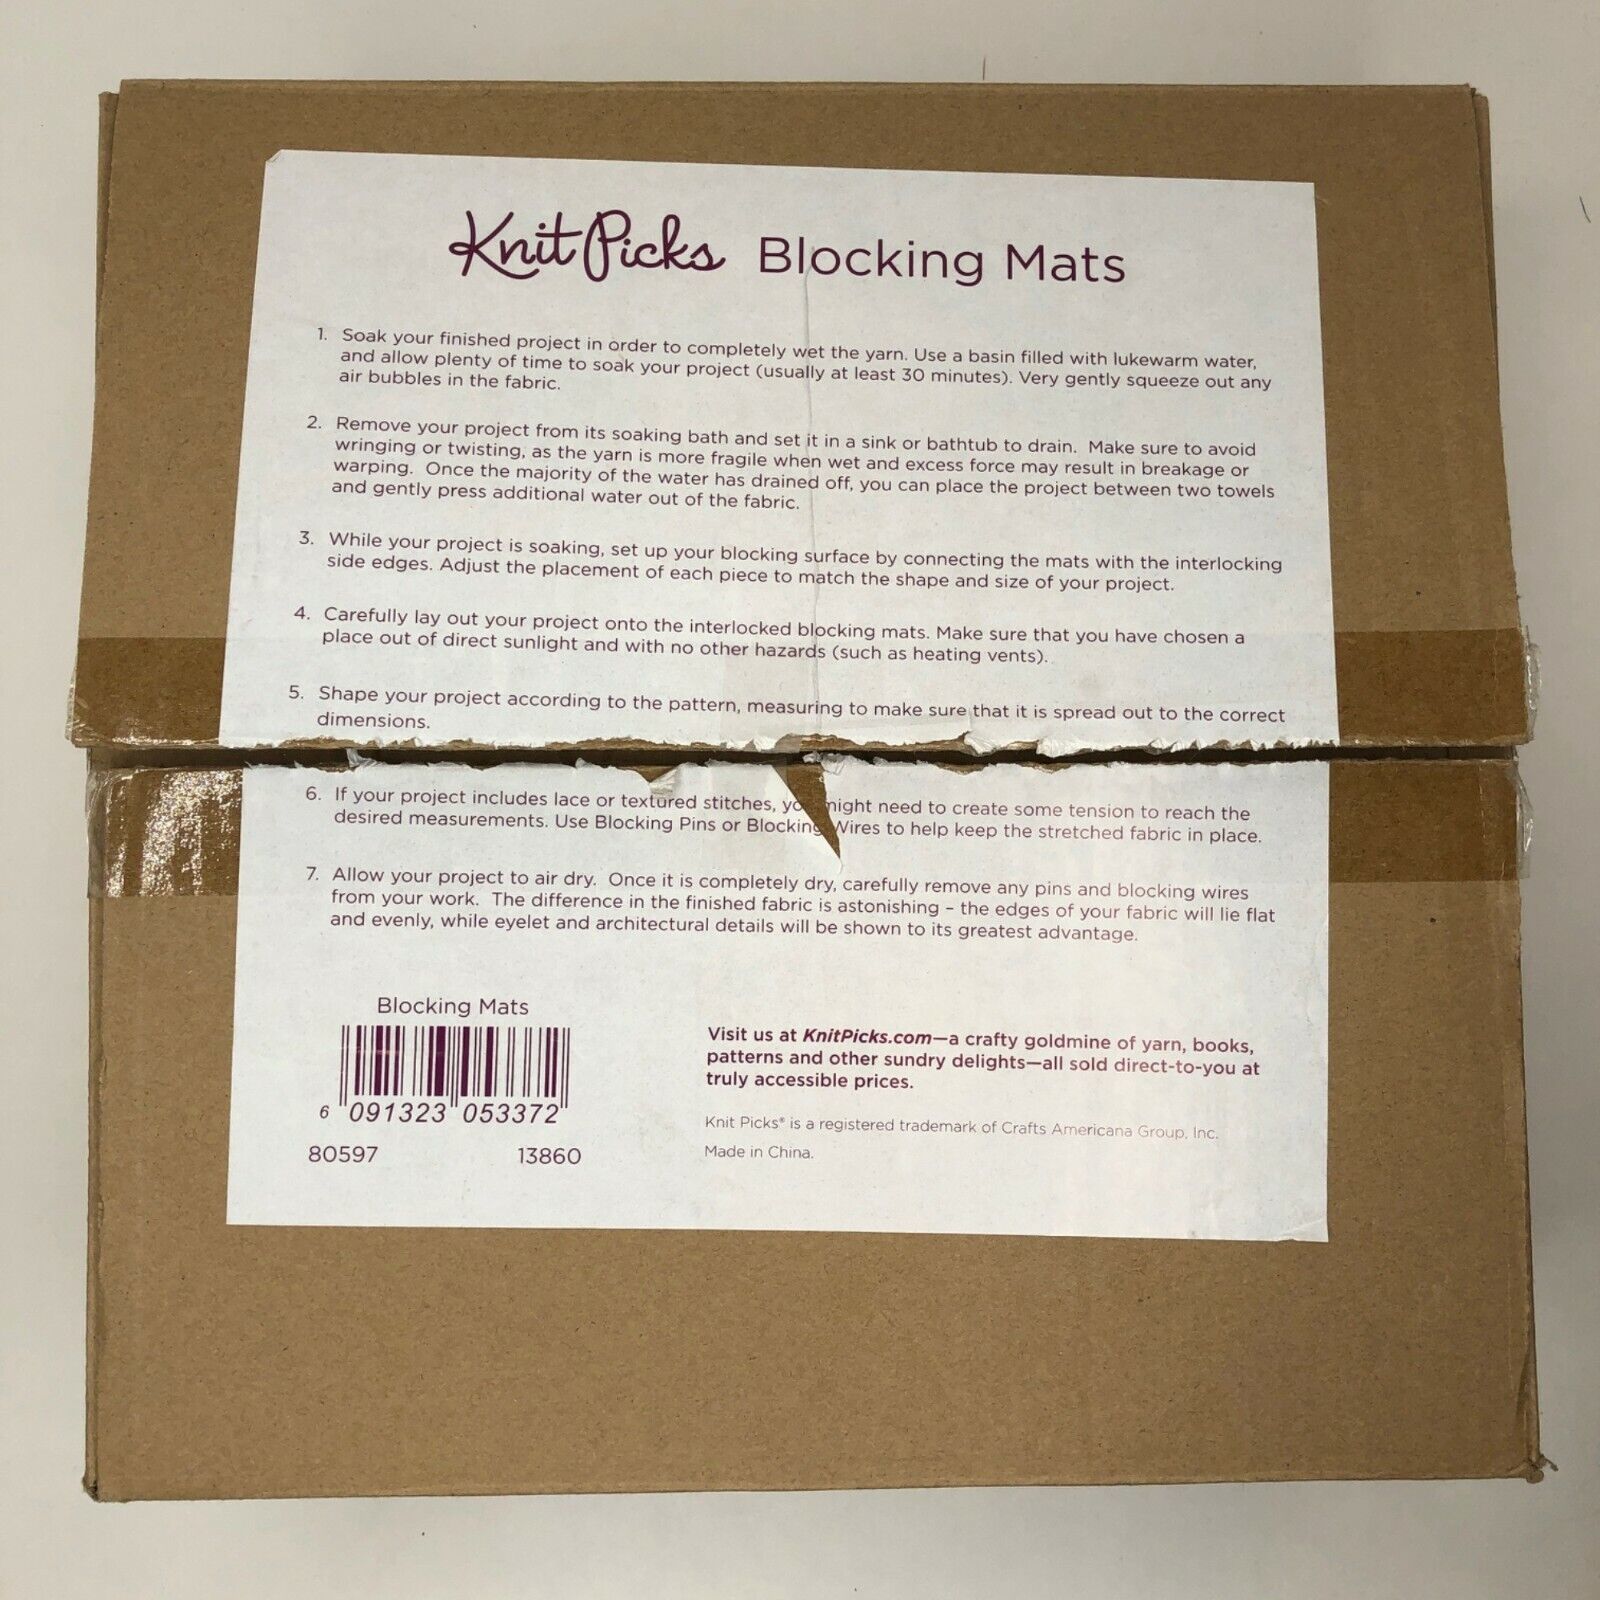 Blocking Mats - 6091323053372